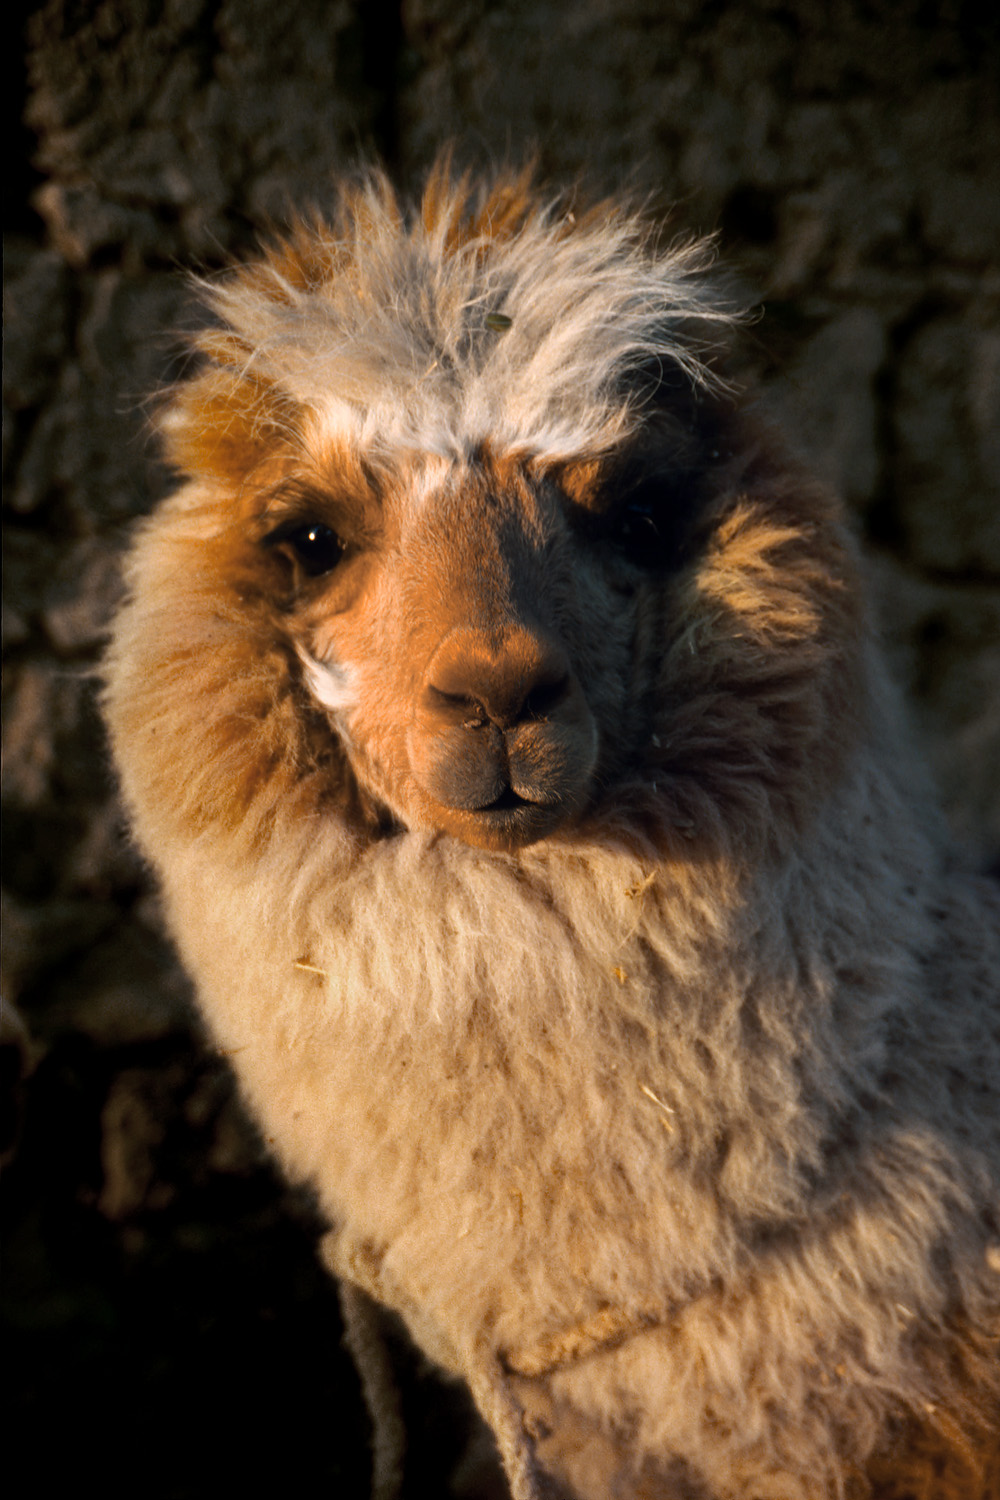 bill-hocker-alpaca-cusco-peru-2005